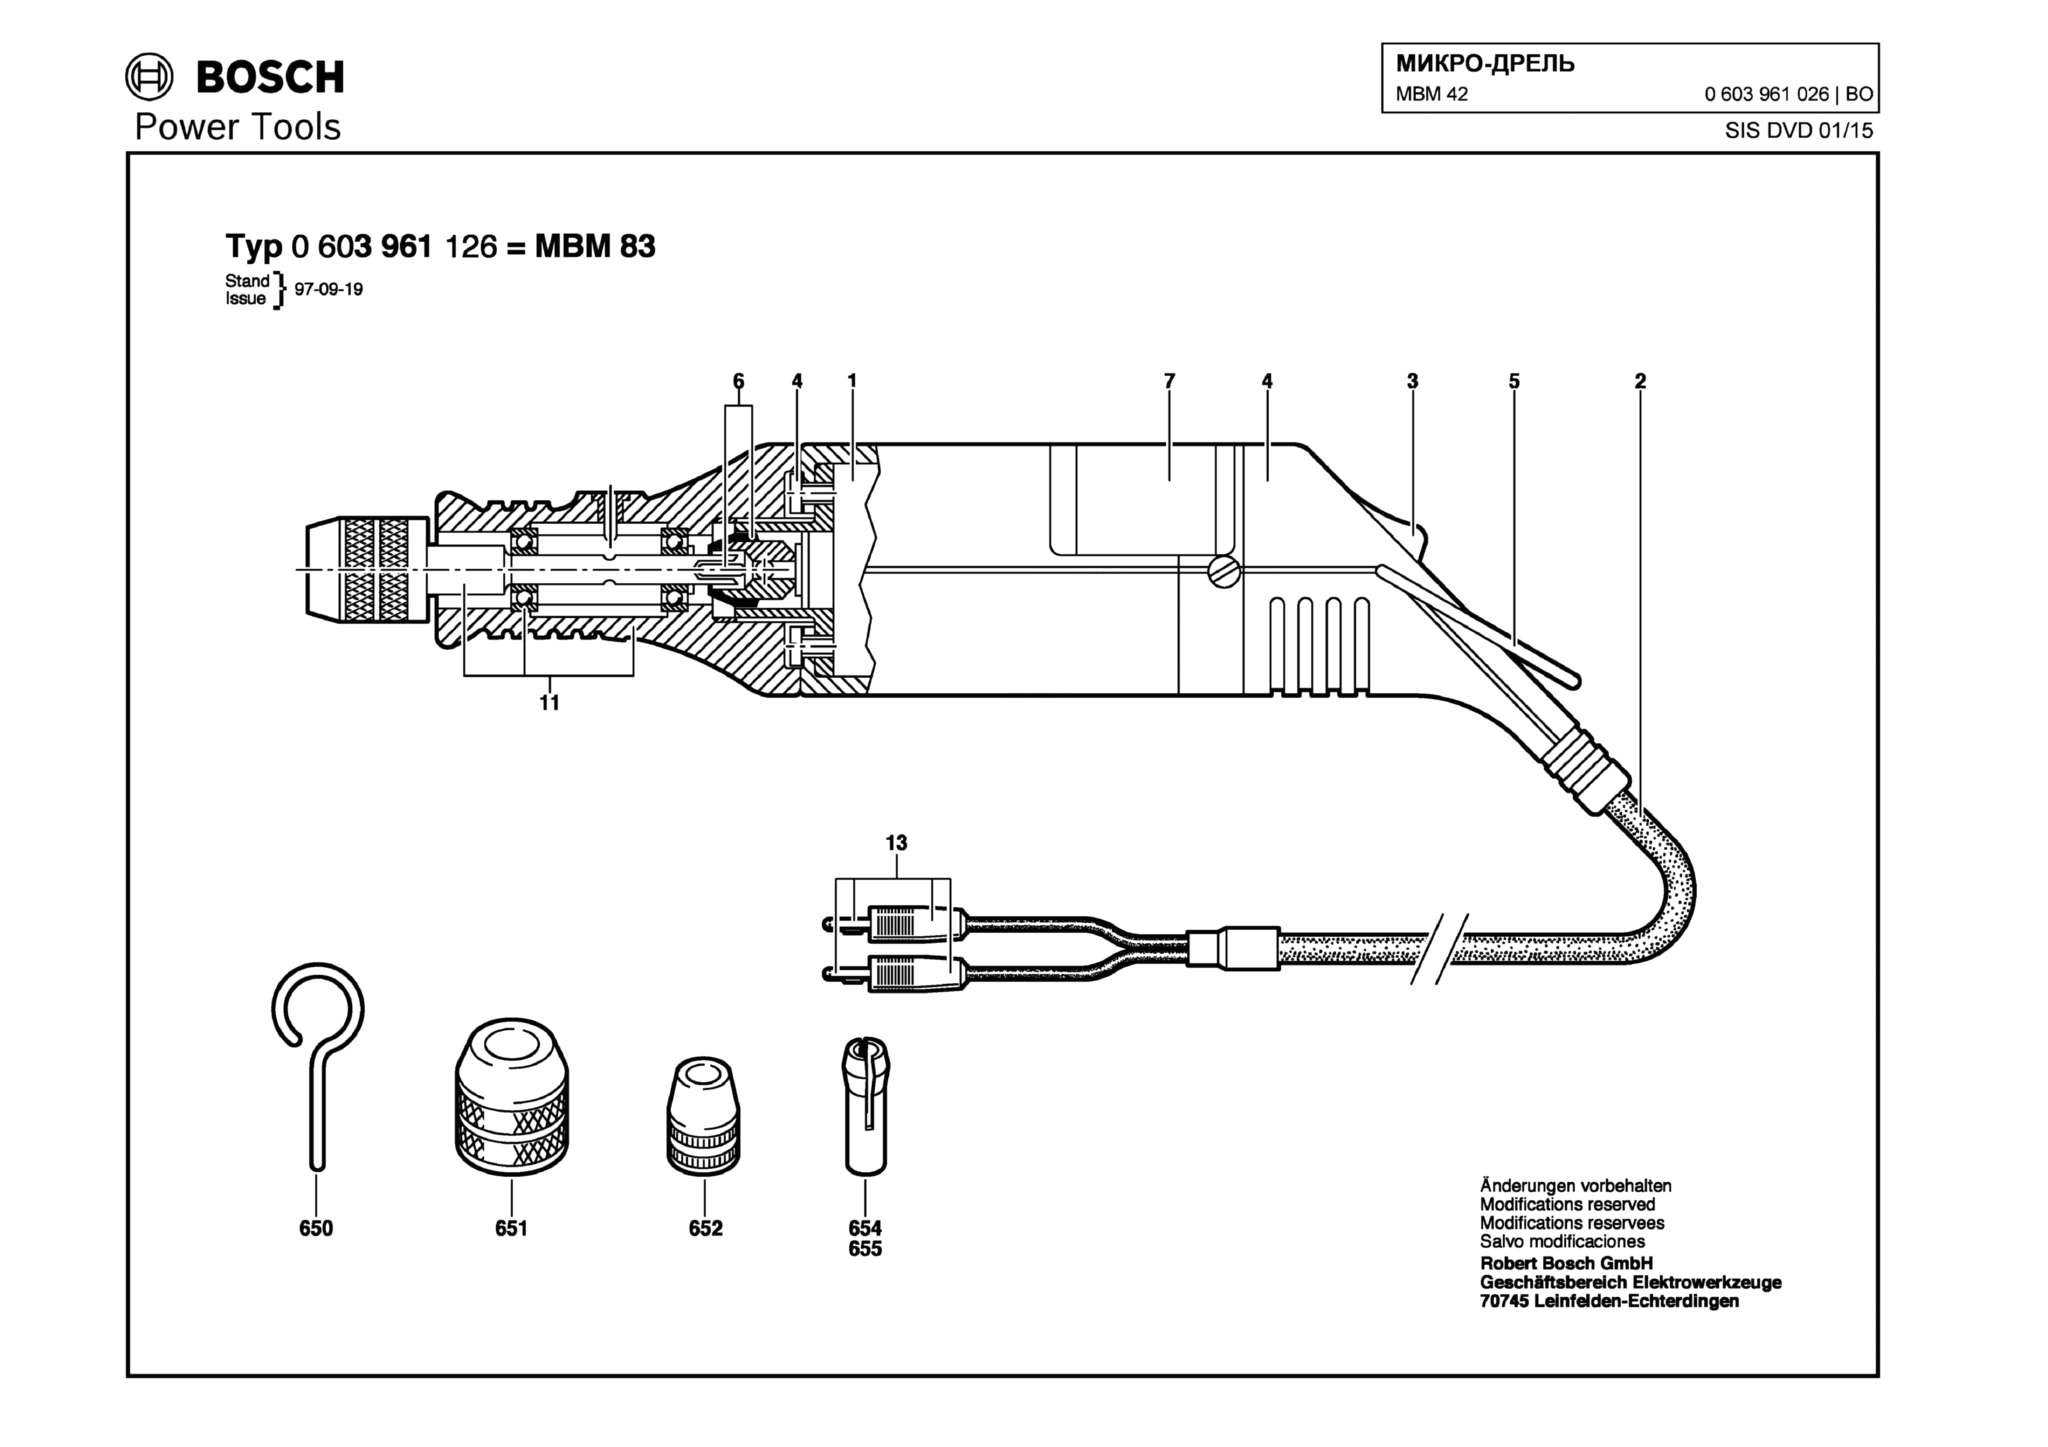 Запчасти, схема и деталировка Bosch MBM 42 (ТИП 0603961026)